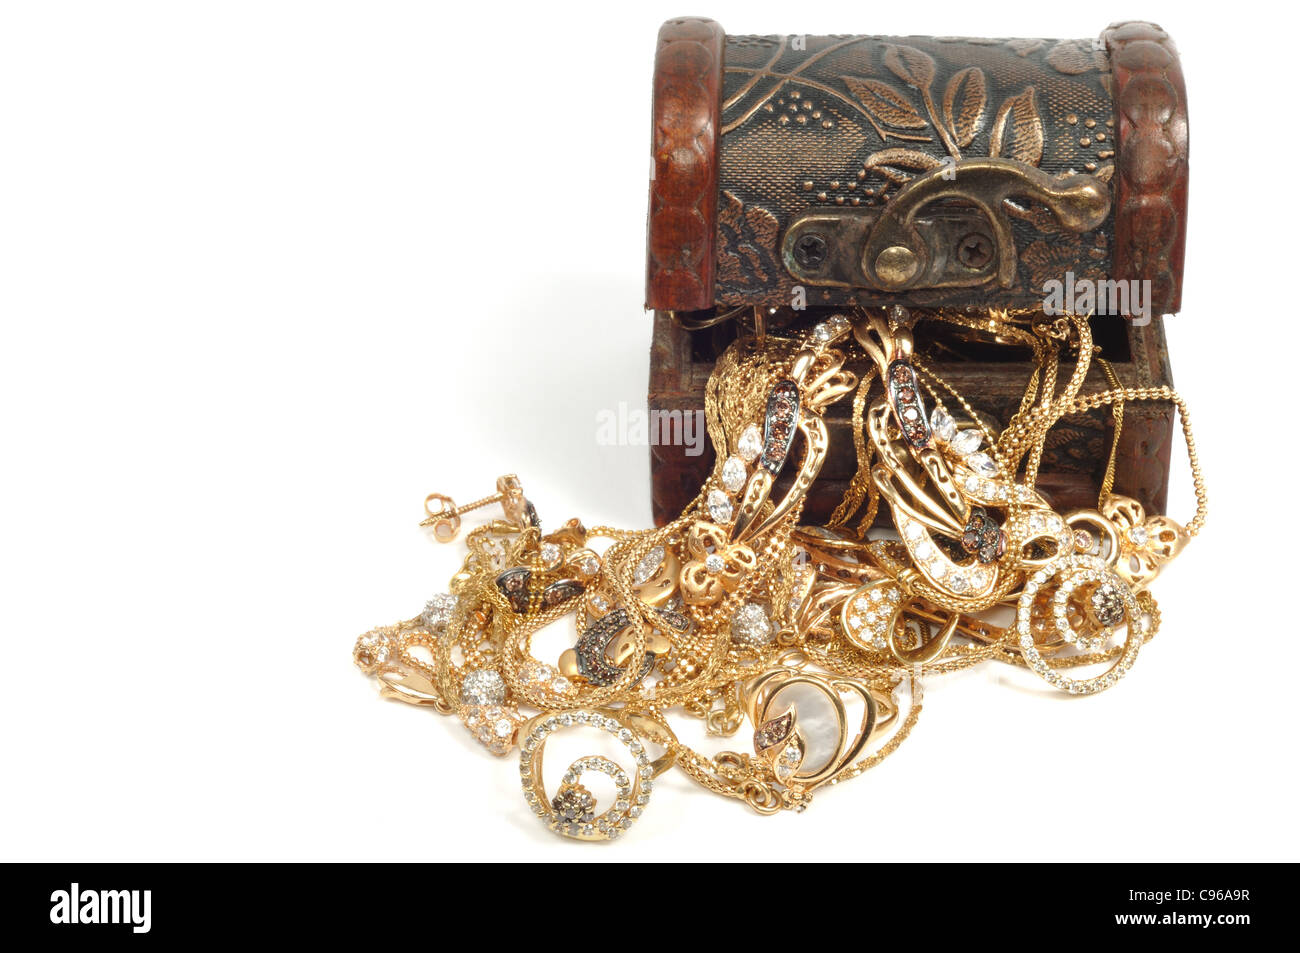 Fashion bijoux en or dans un coffret en bois, isolé sur fond blanc Banque D'Images